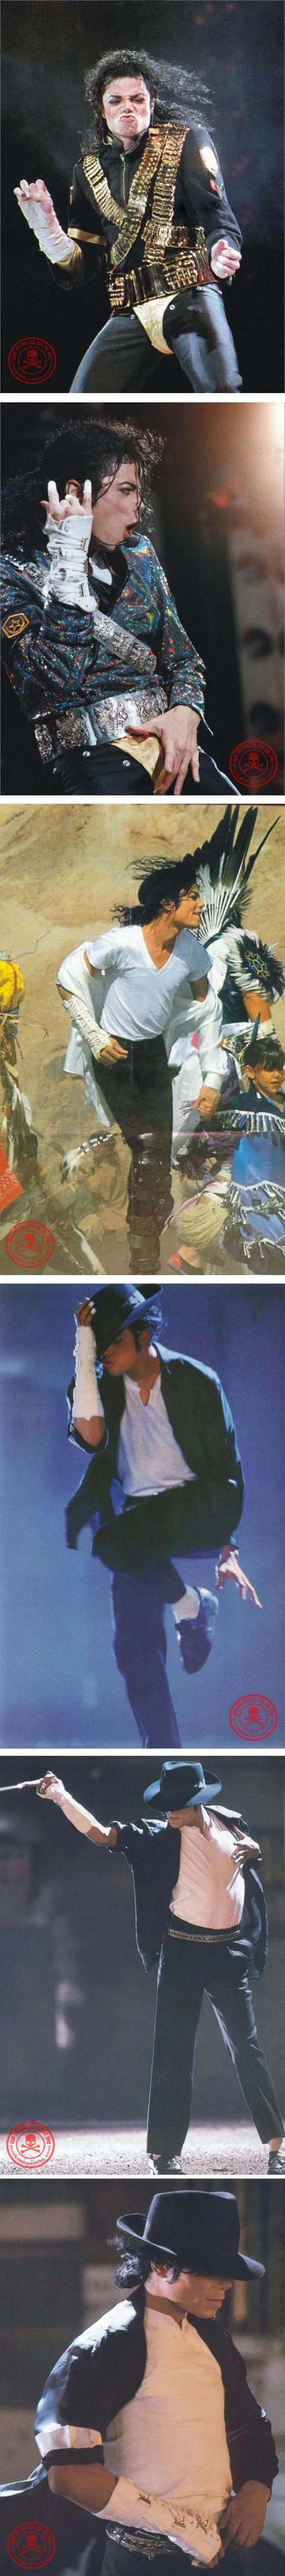 2 шт. панк рок концерт MJ Майкл Джексон классическая коллекция хлопок белый назад ArmBrace перчатки по локоть